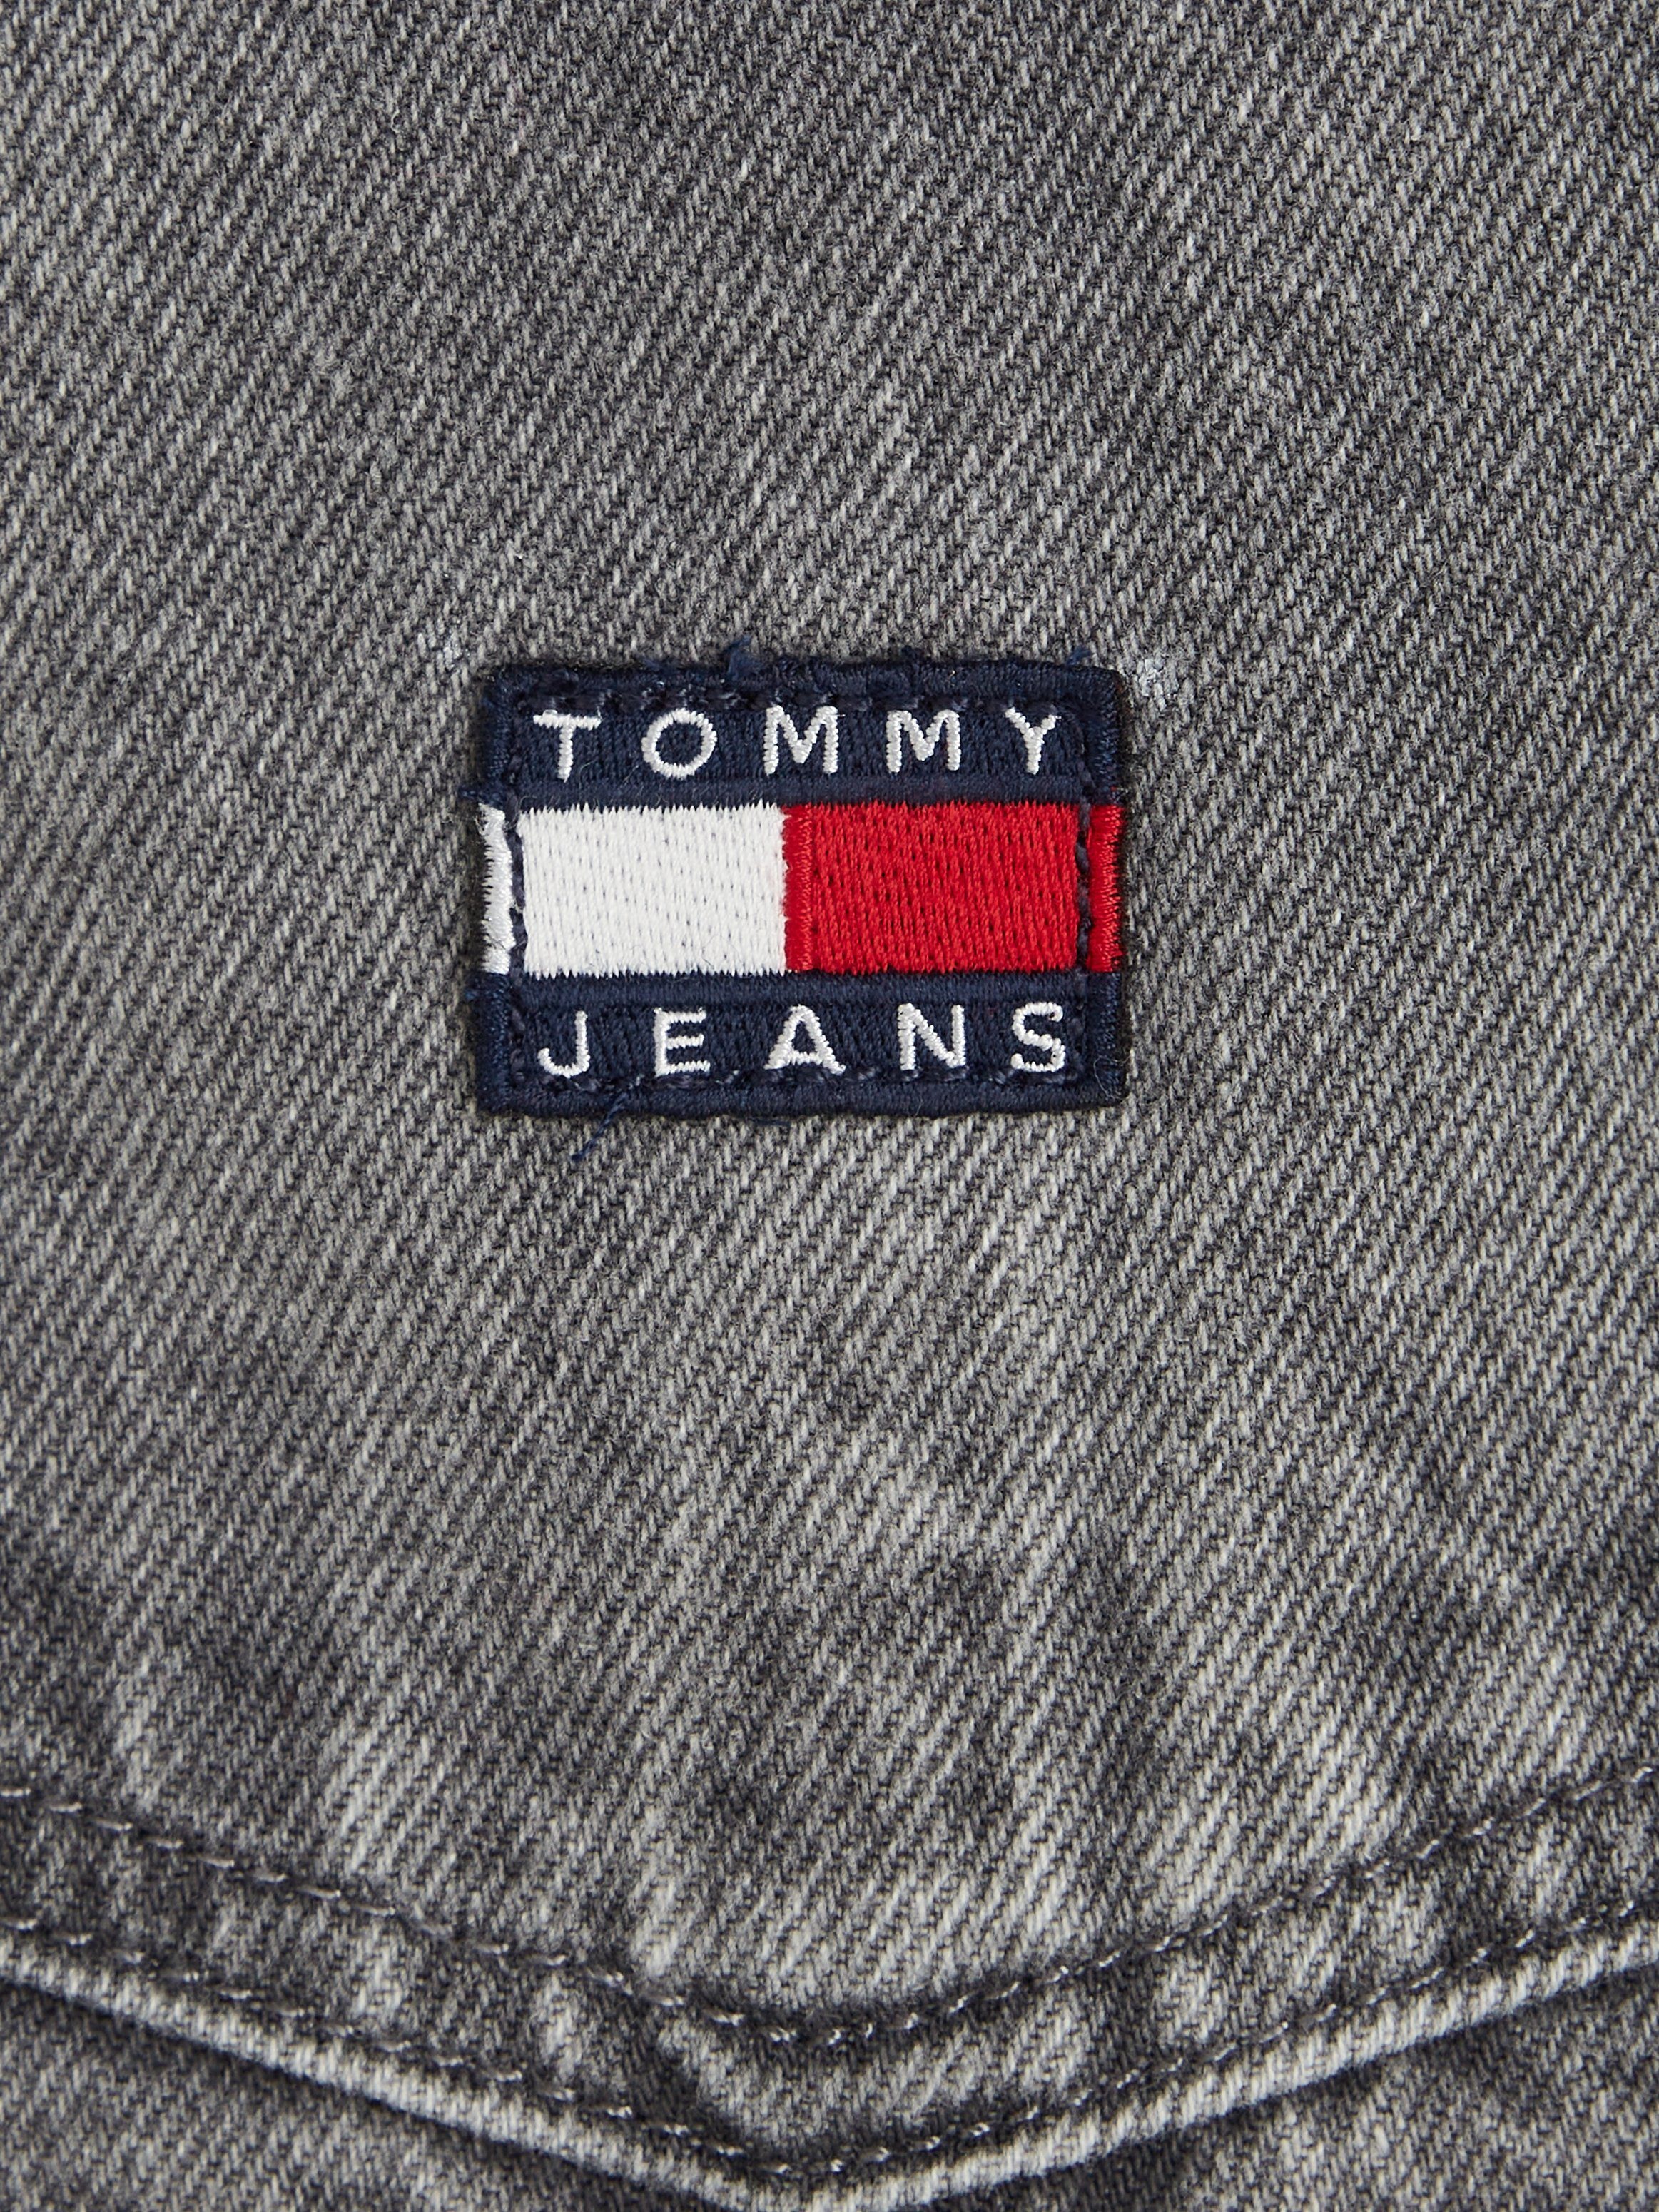 Tommy DRESS PINAFORE DG4072 Markenlabel Jeans Jeanskleid mit Tommy Jeans